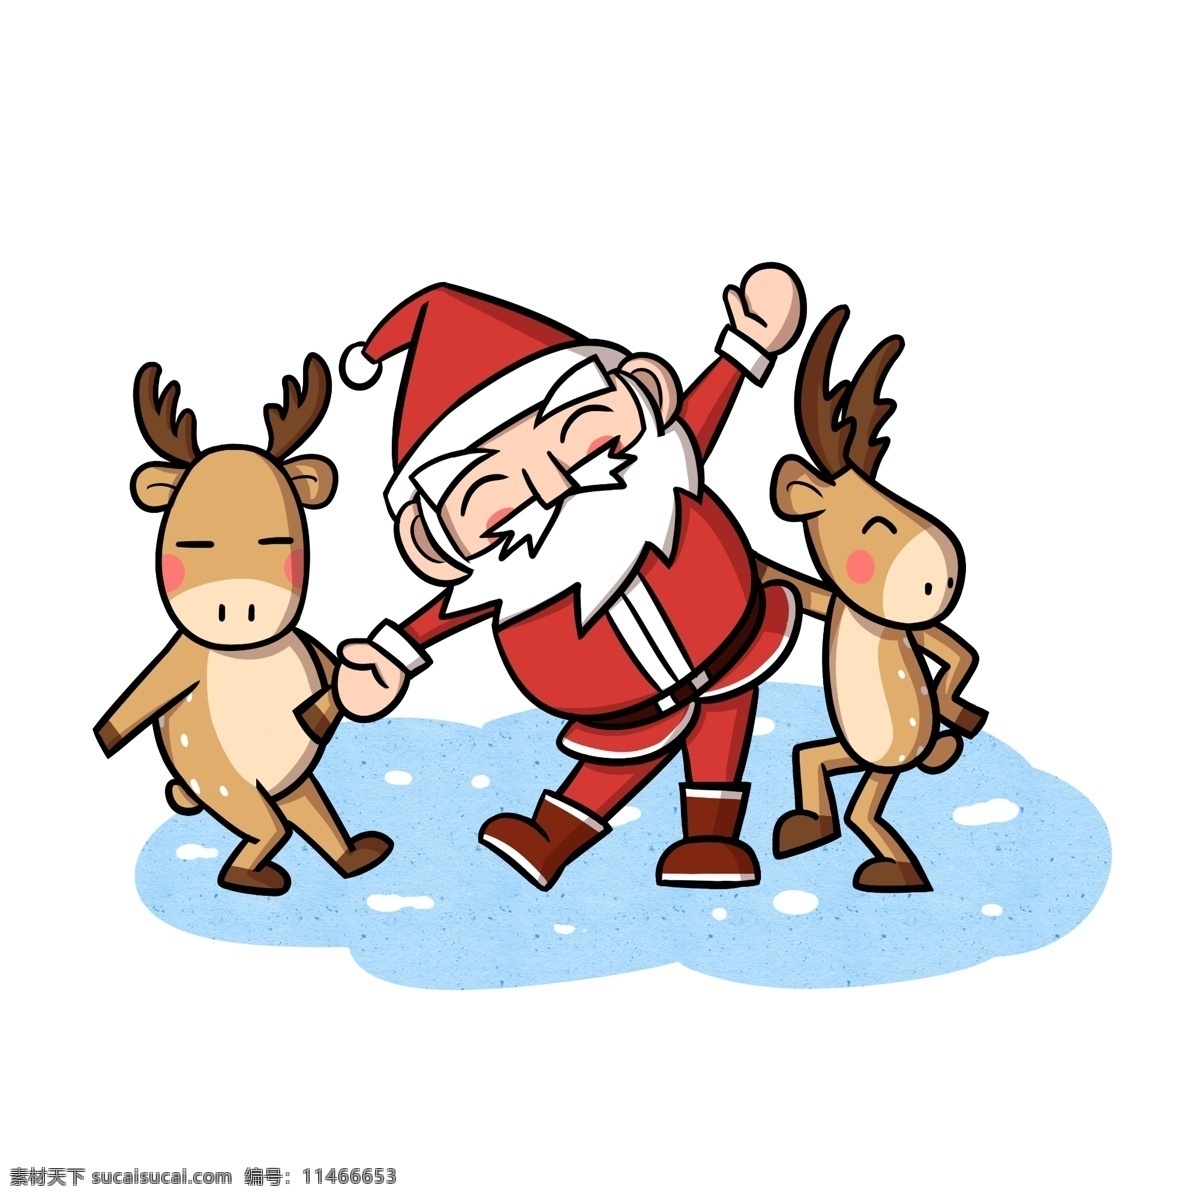 卡通 圣诞老人 驯鹿 玩耍 透明 底 christmas 卡通圣诞老人 卡通驯鹿 圣诞快乐 圣诞节快乐 圣诞节 冬季 节日